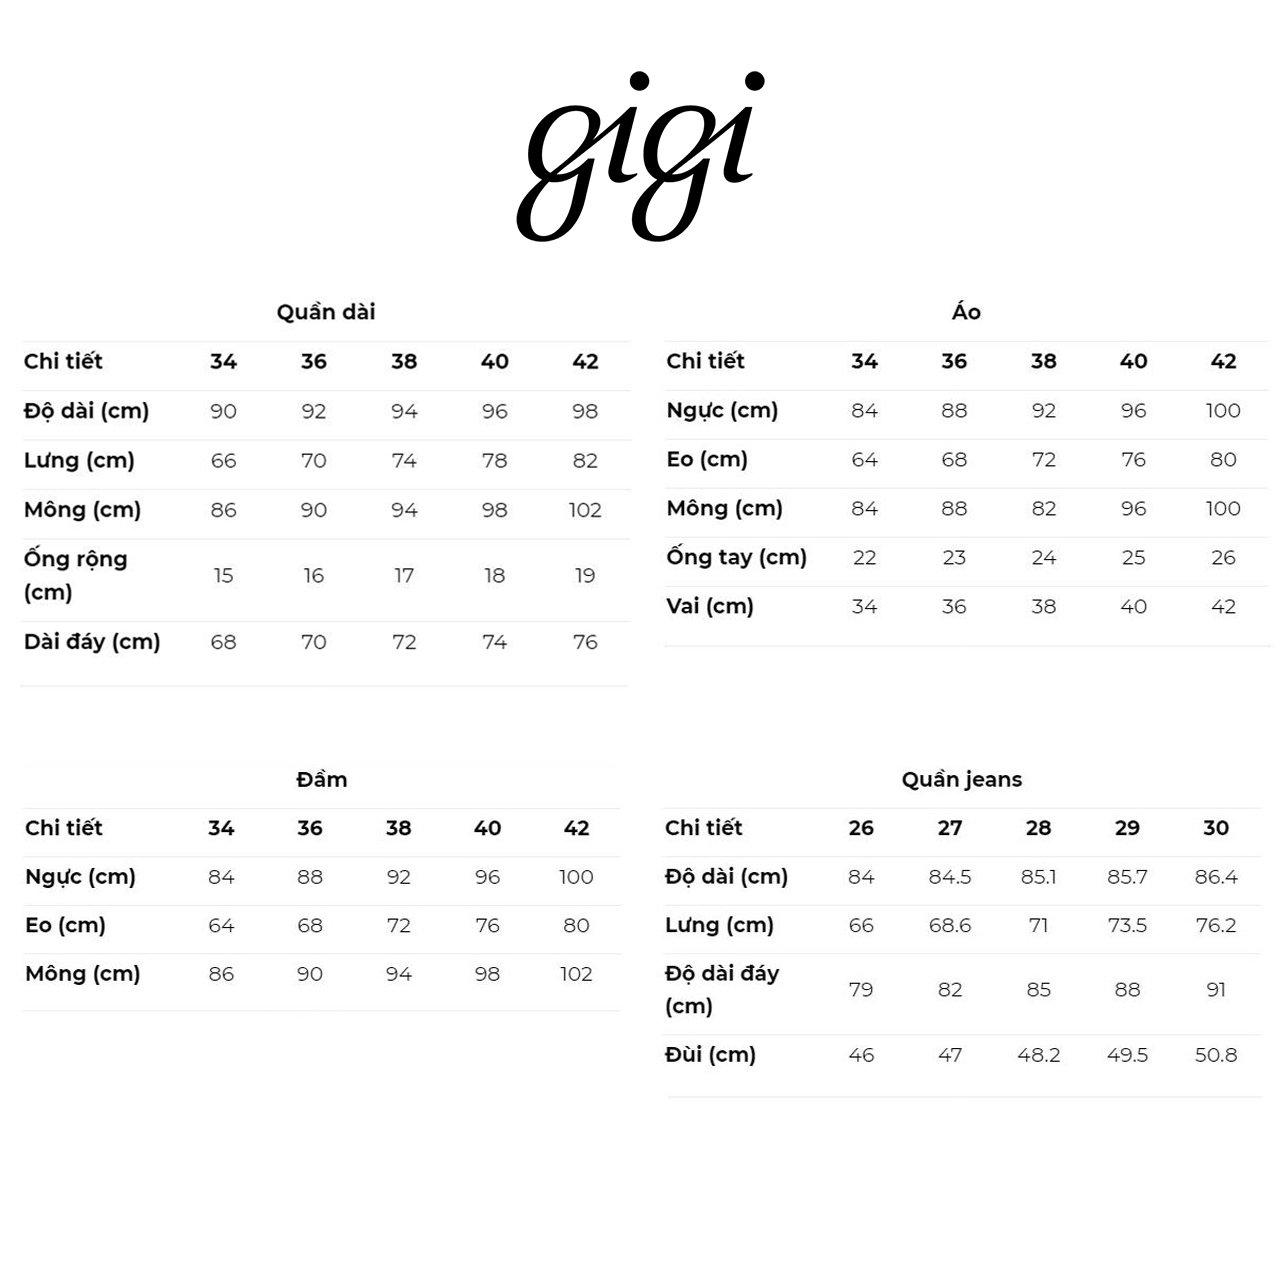 GIGI - Đầm sơ mi mini tay ngắn phối túi trẻ trung G2107D231182